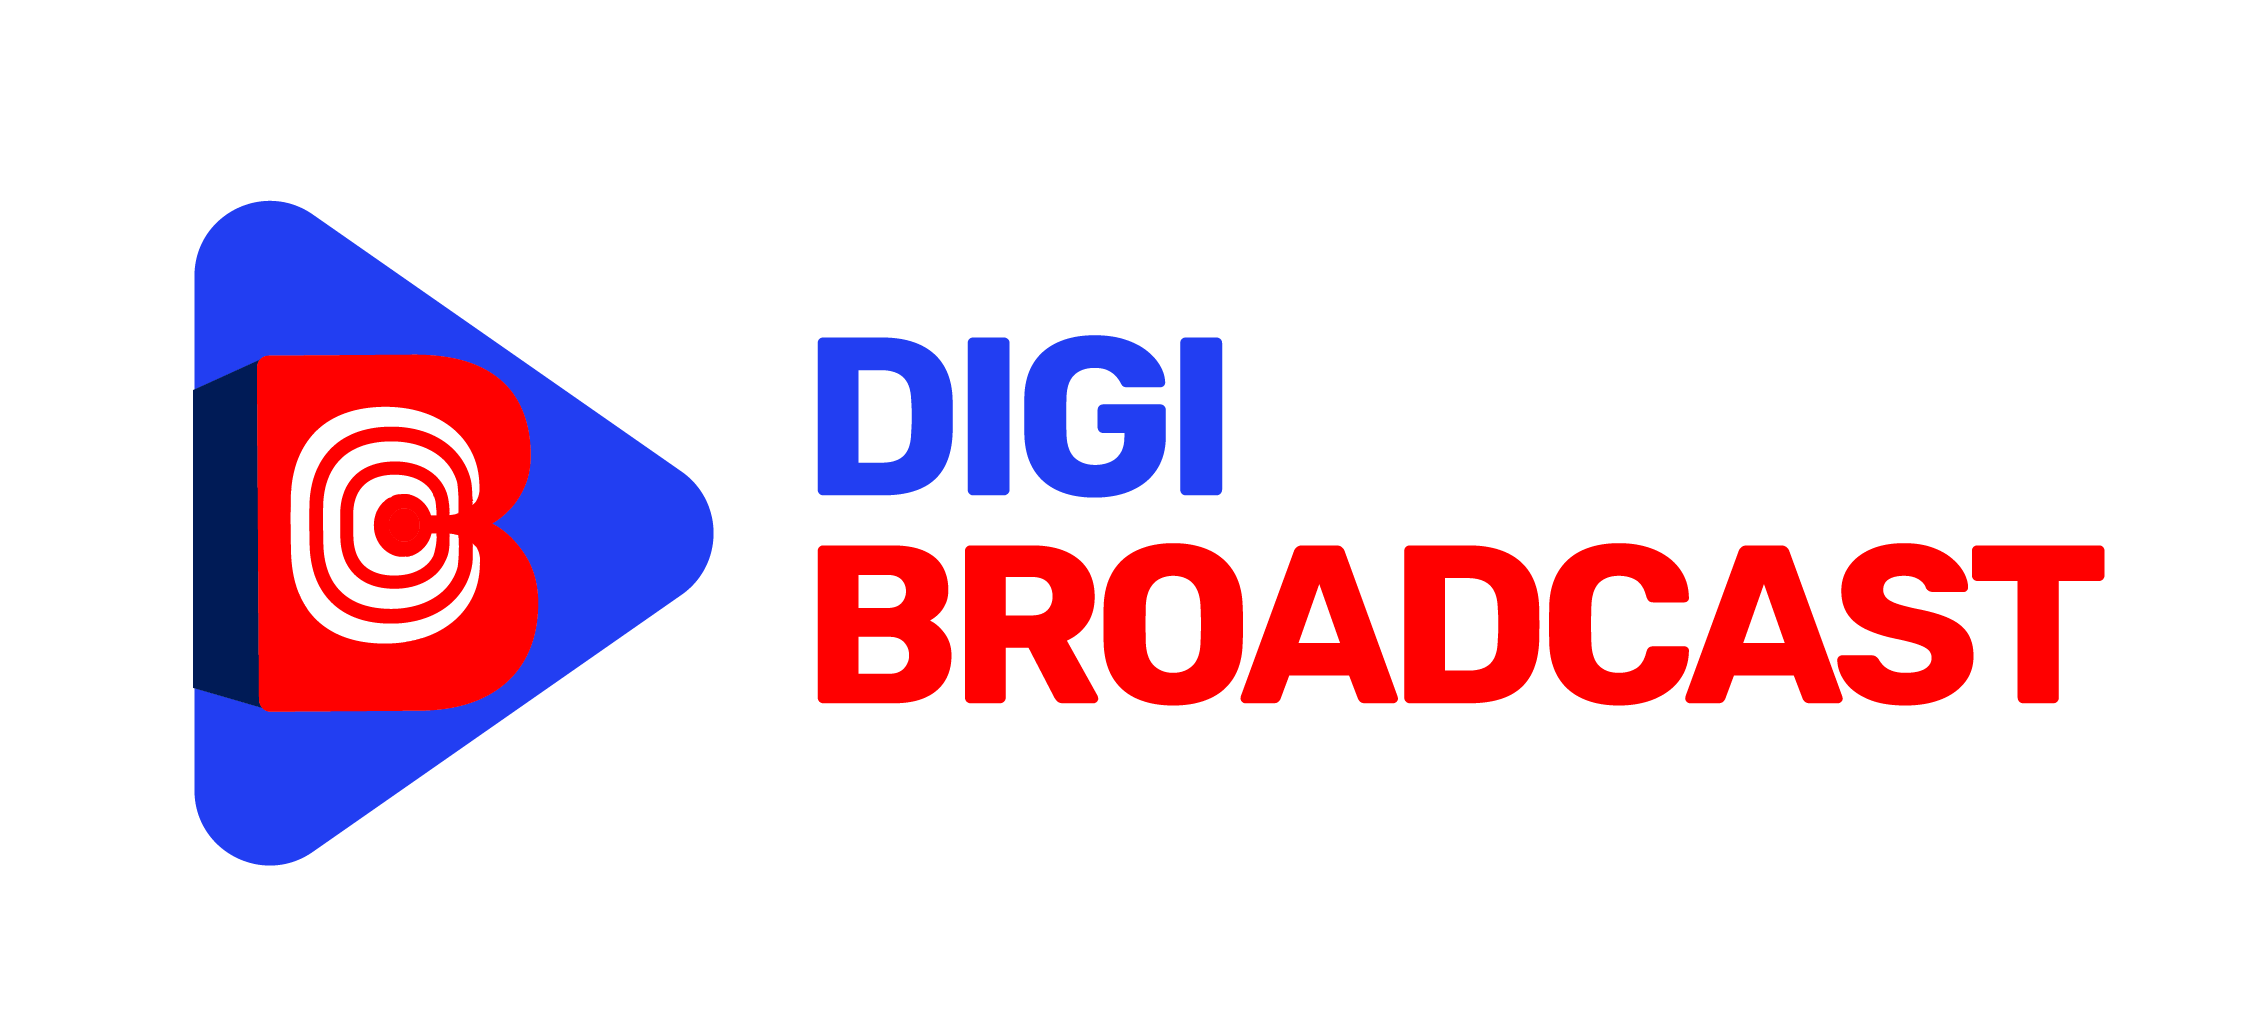 Digi-Broadcast-01